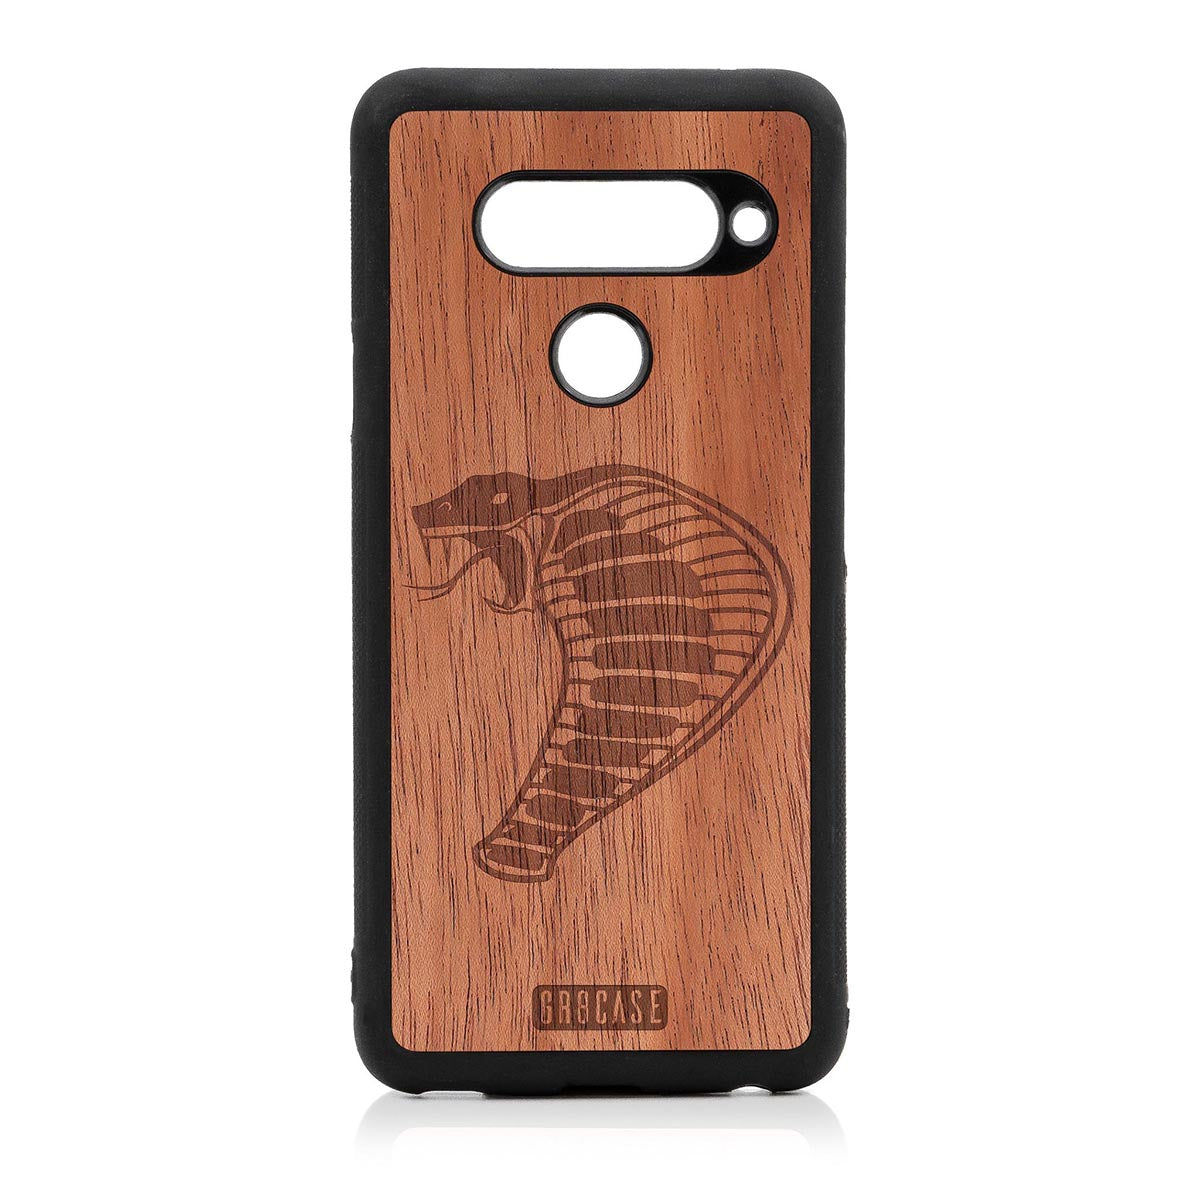 Cobra Design Wood Case For LG V40 ThinQ by GR8CASE